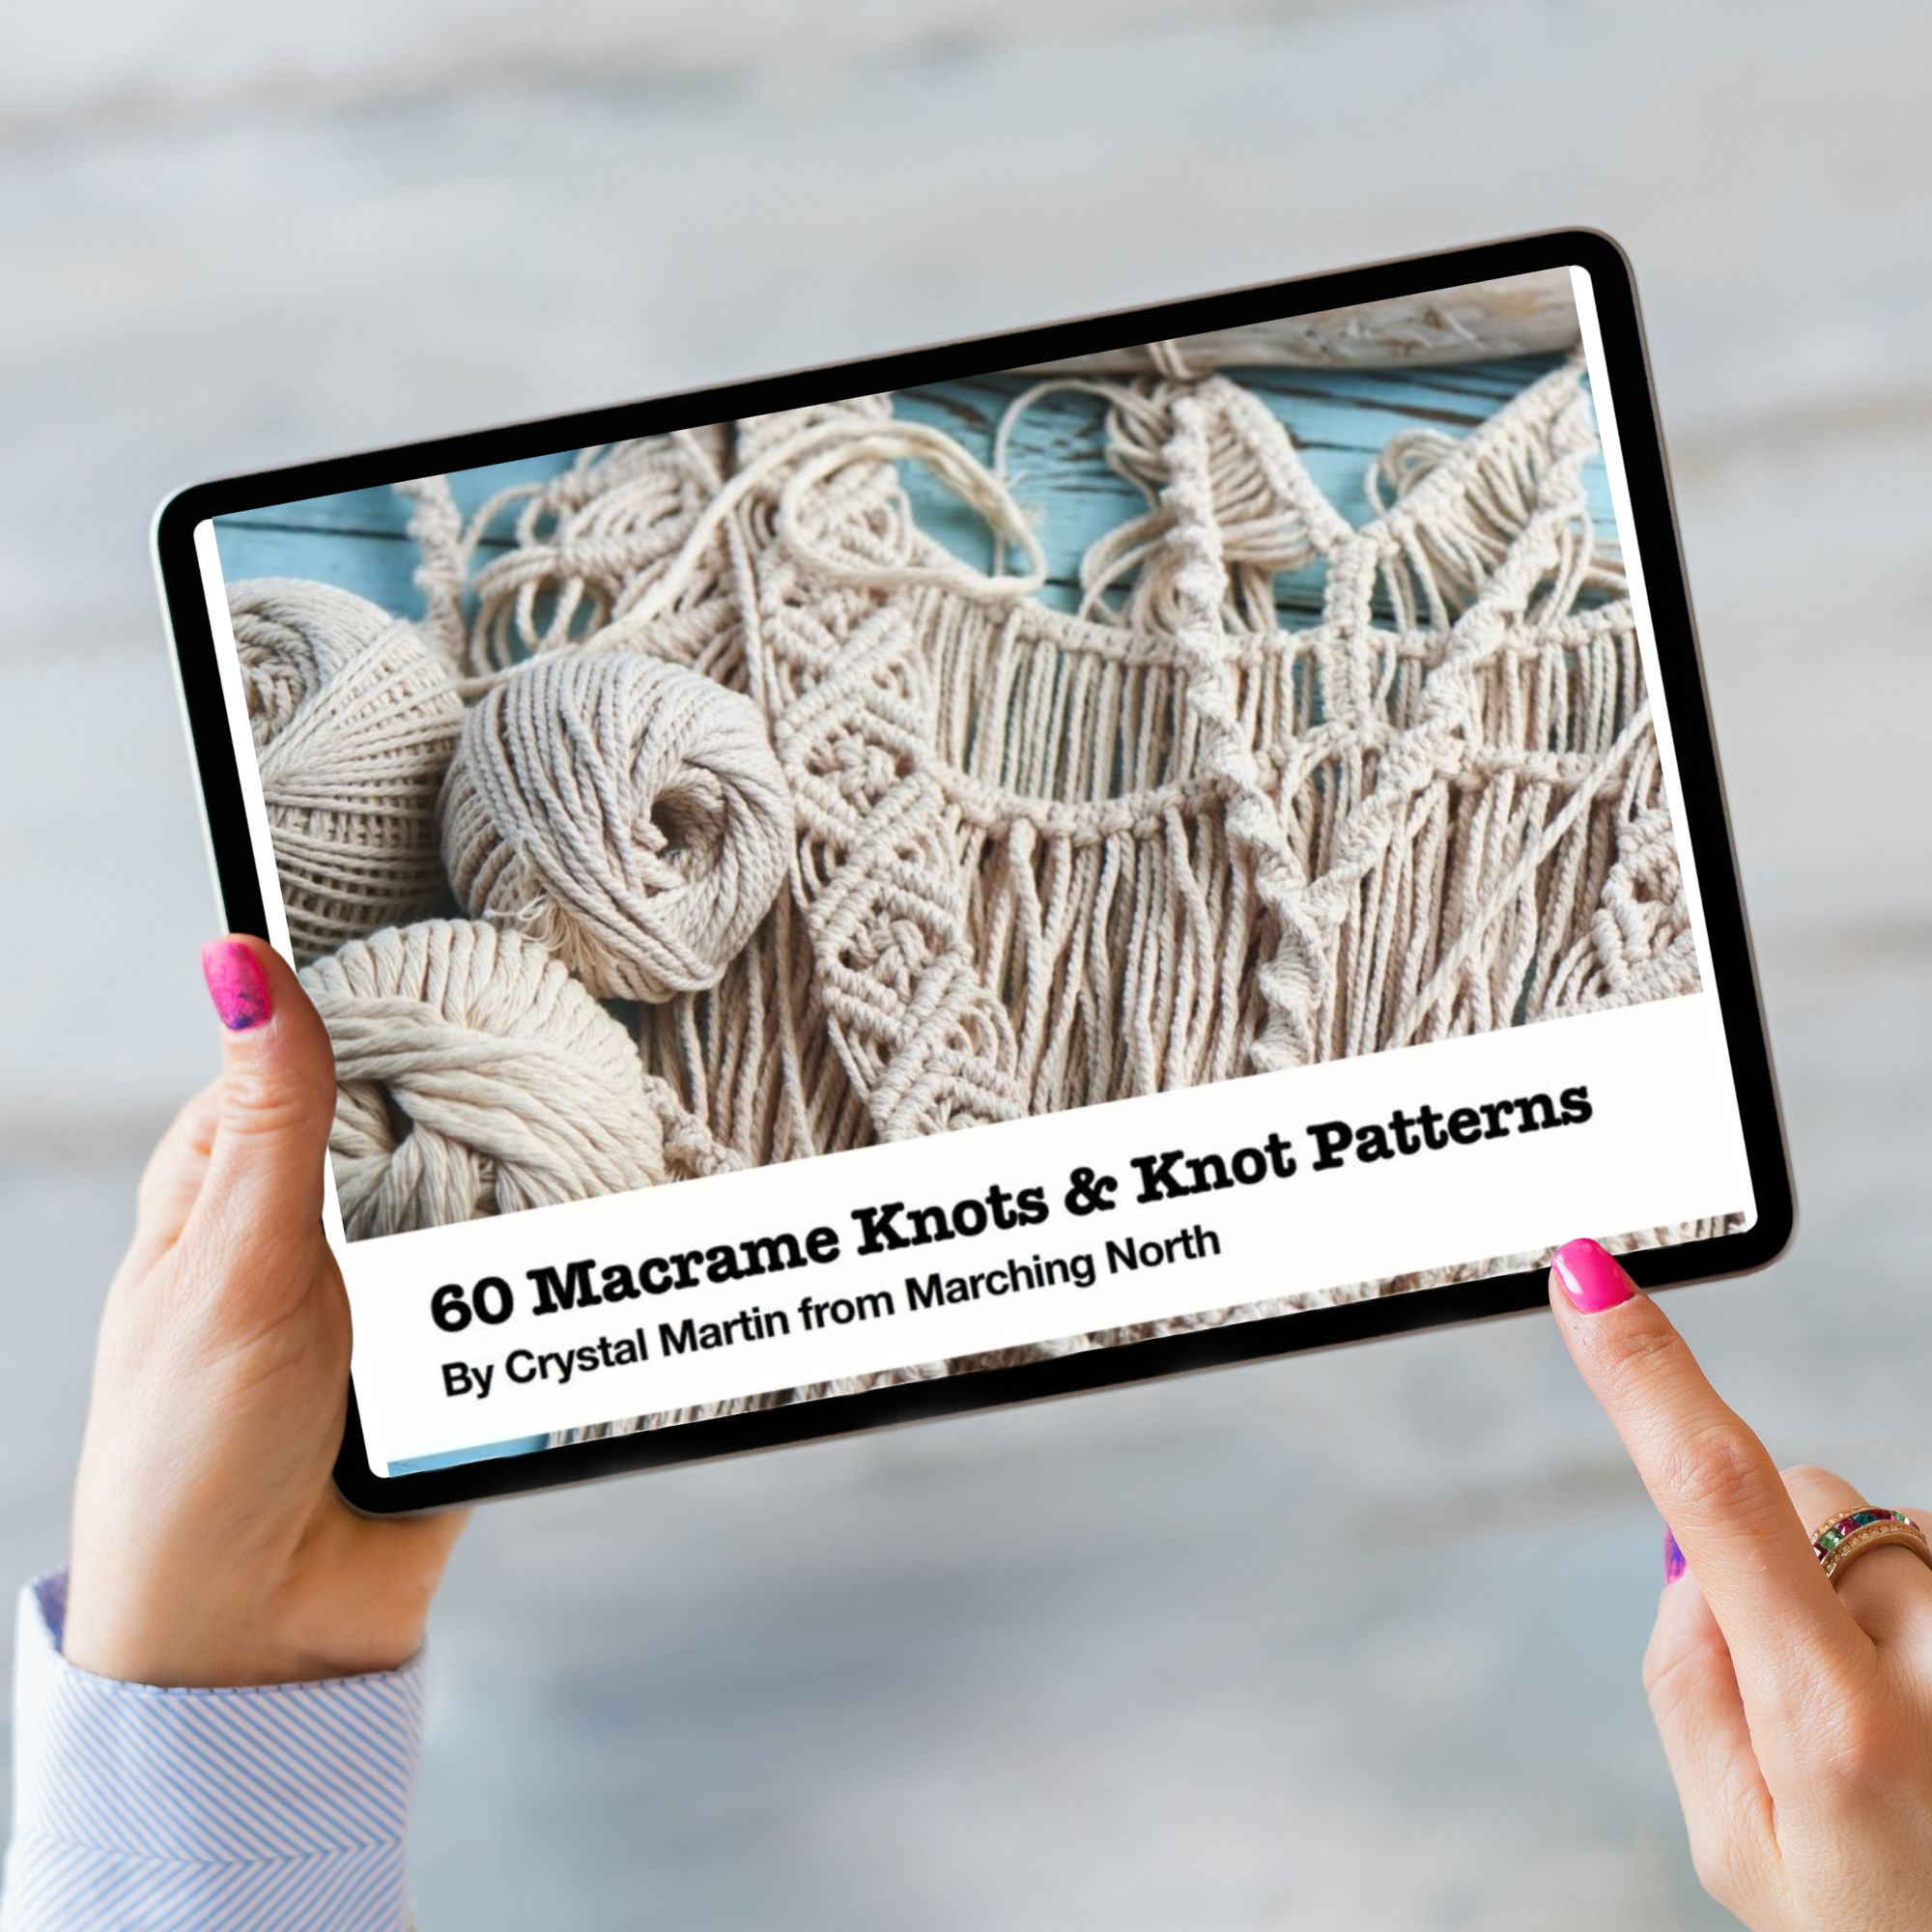 60 Macrame Knots &amp;amp; Knot Patterns ebook mockup on a tablet